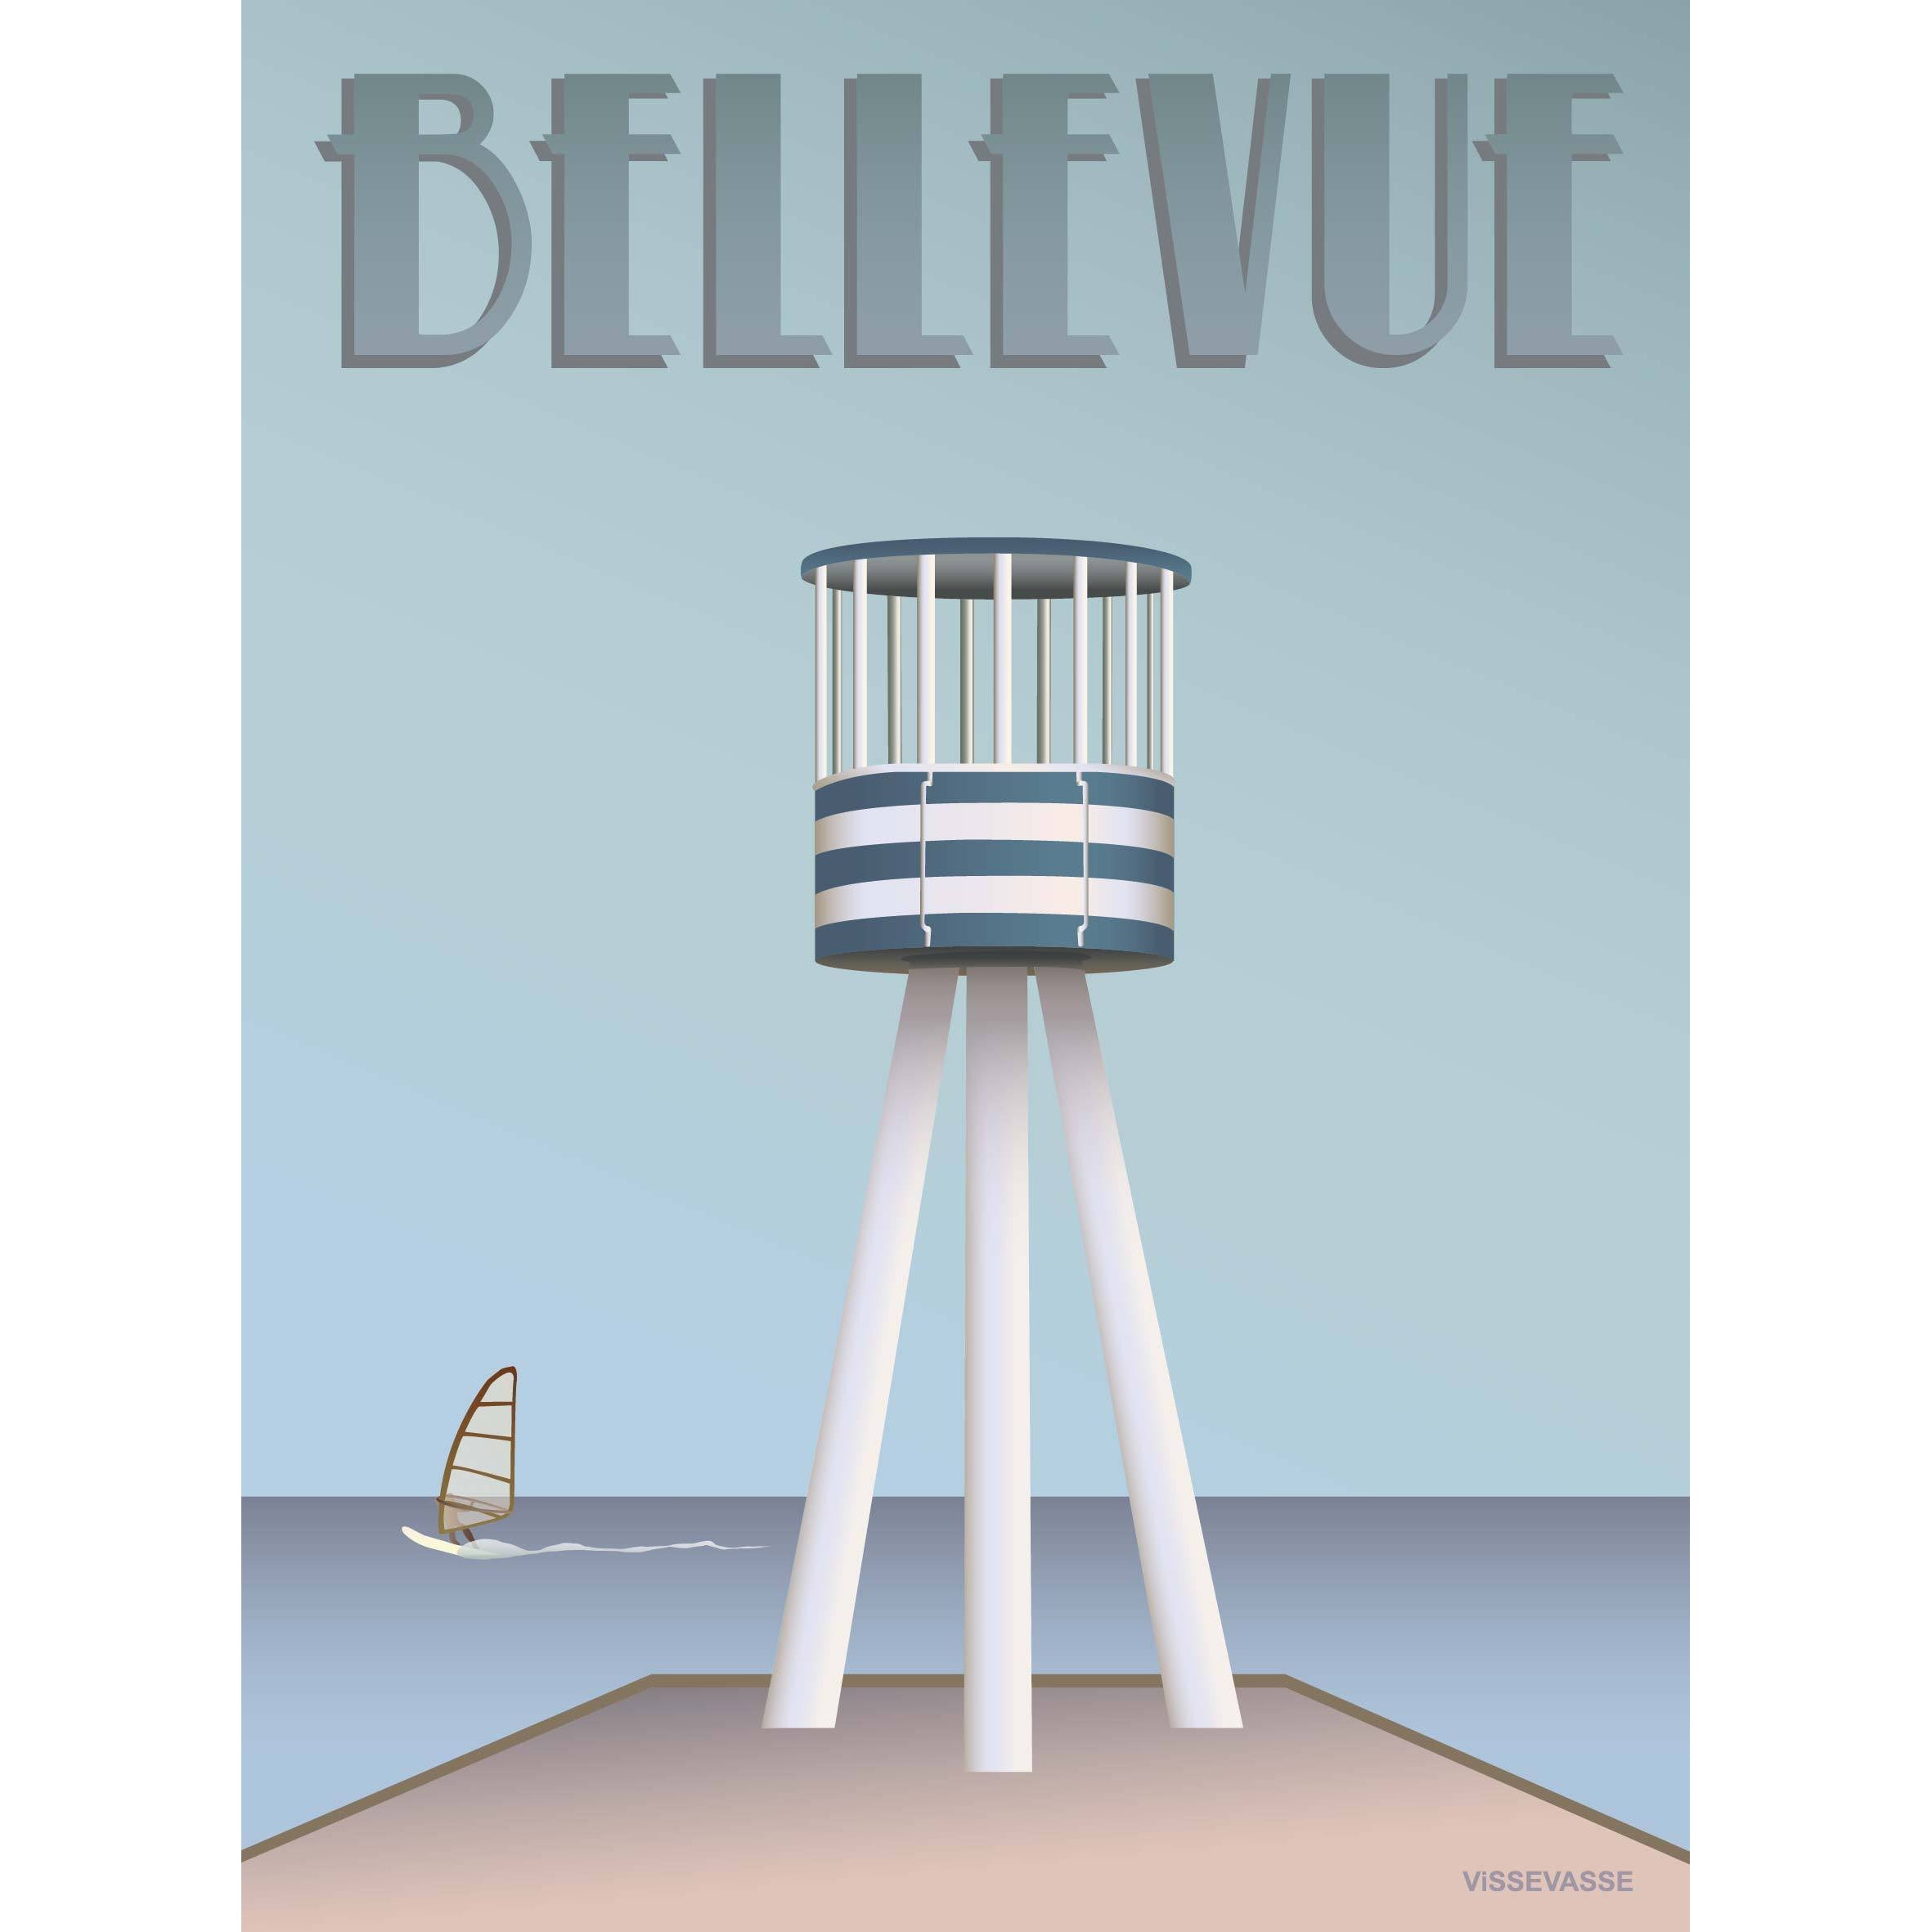 Vissevasse Bellevue Rettungsschwimmerturm Poster, 15 X21 Cm